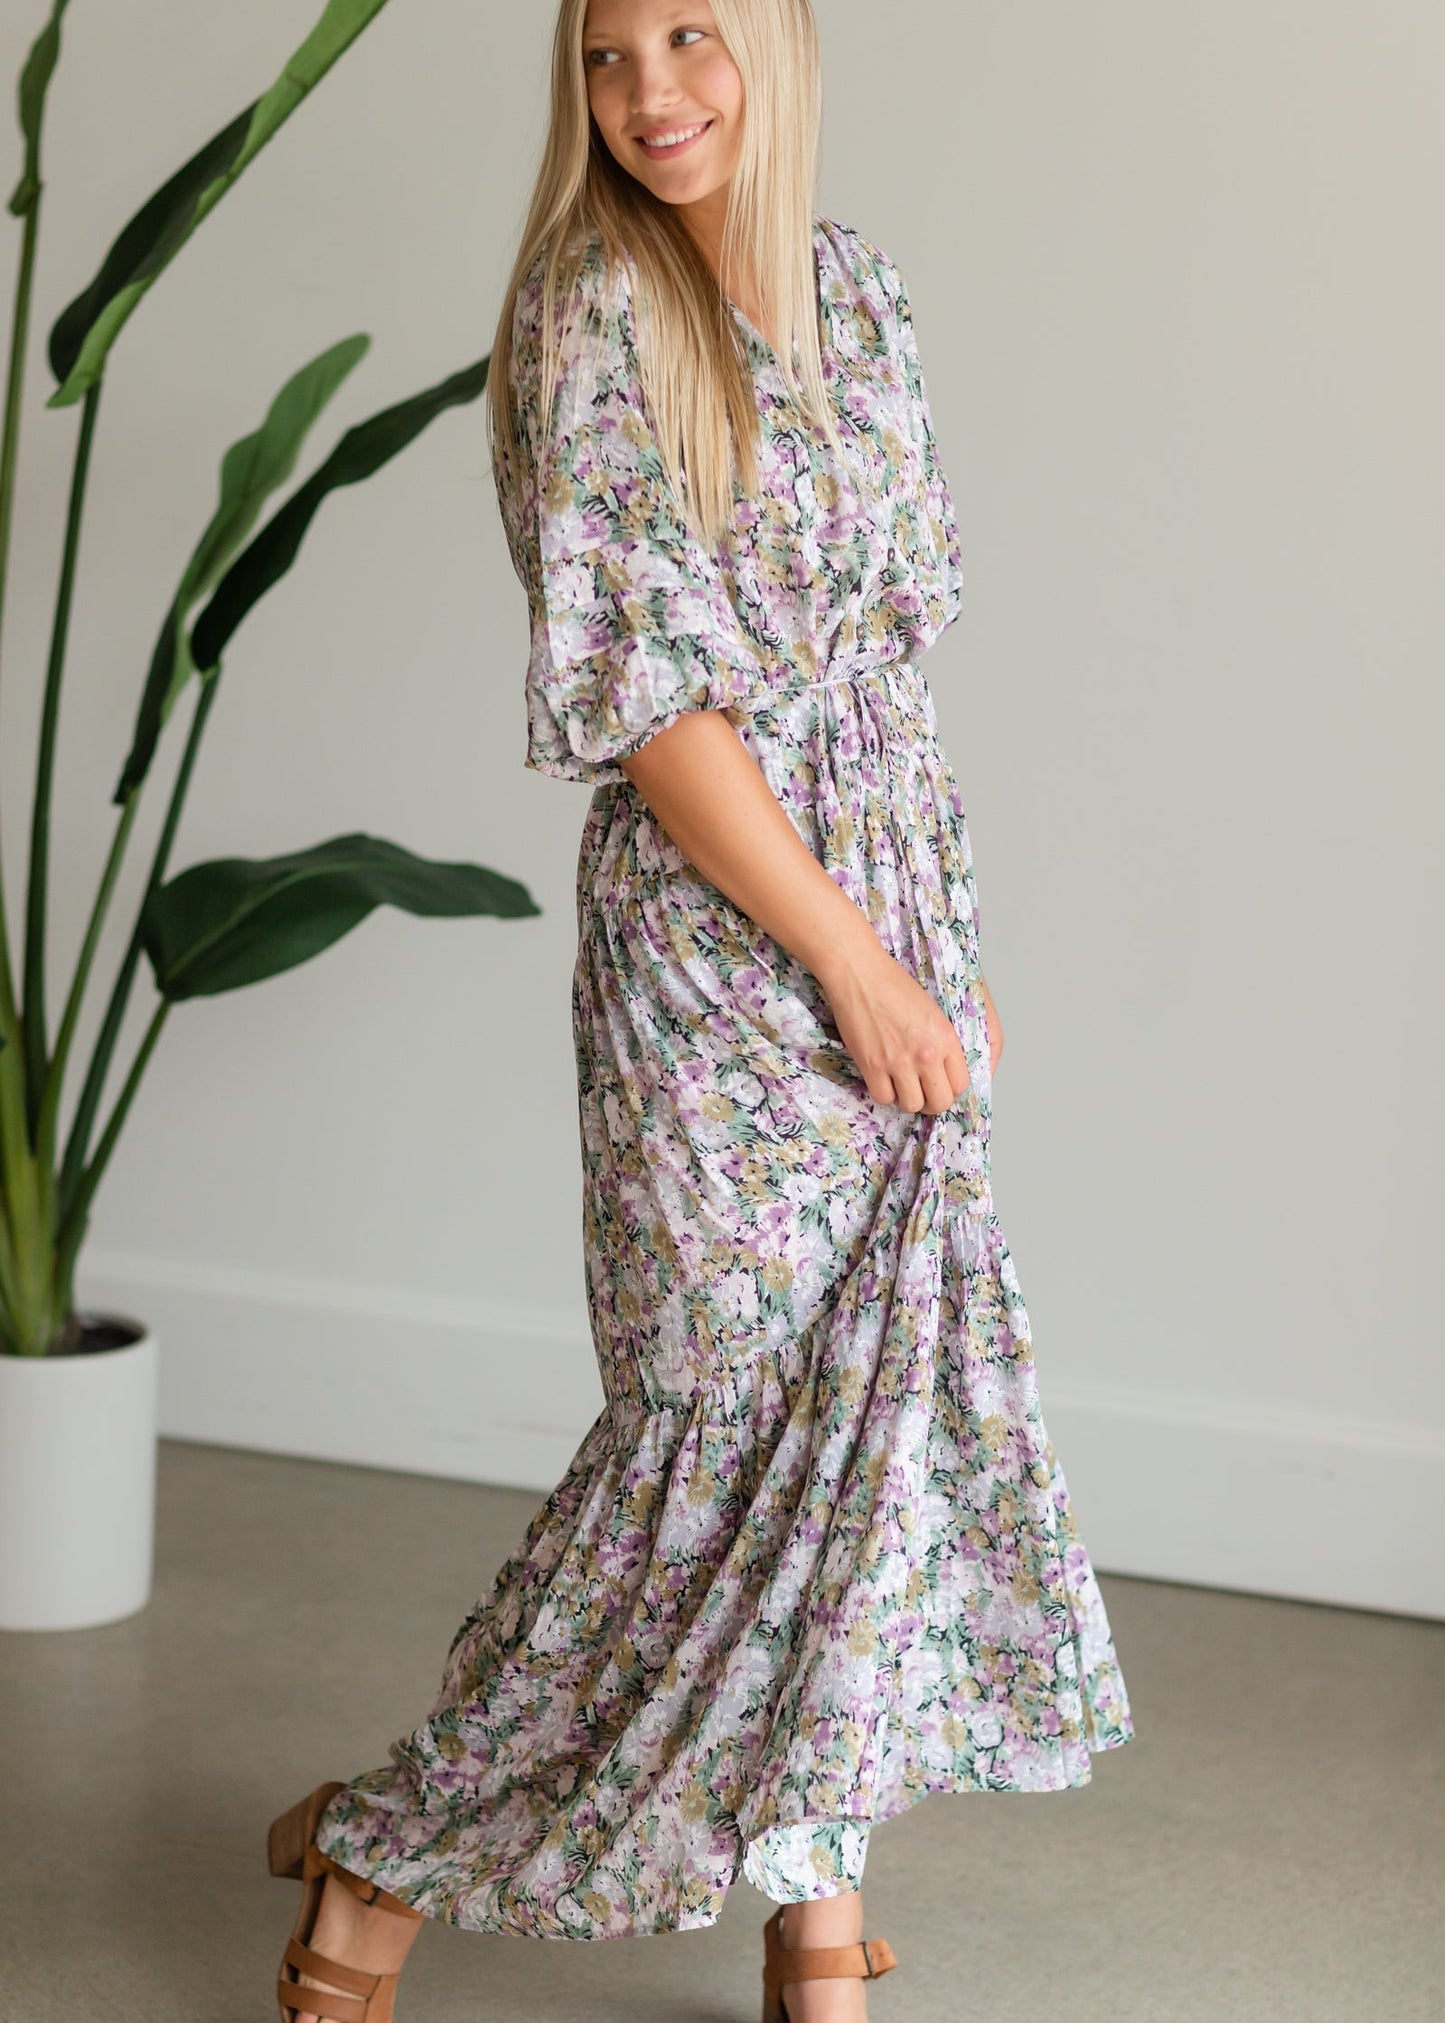 Multi Floral Tie Waist Maxi Dress - FINAL SALE Dresses